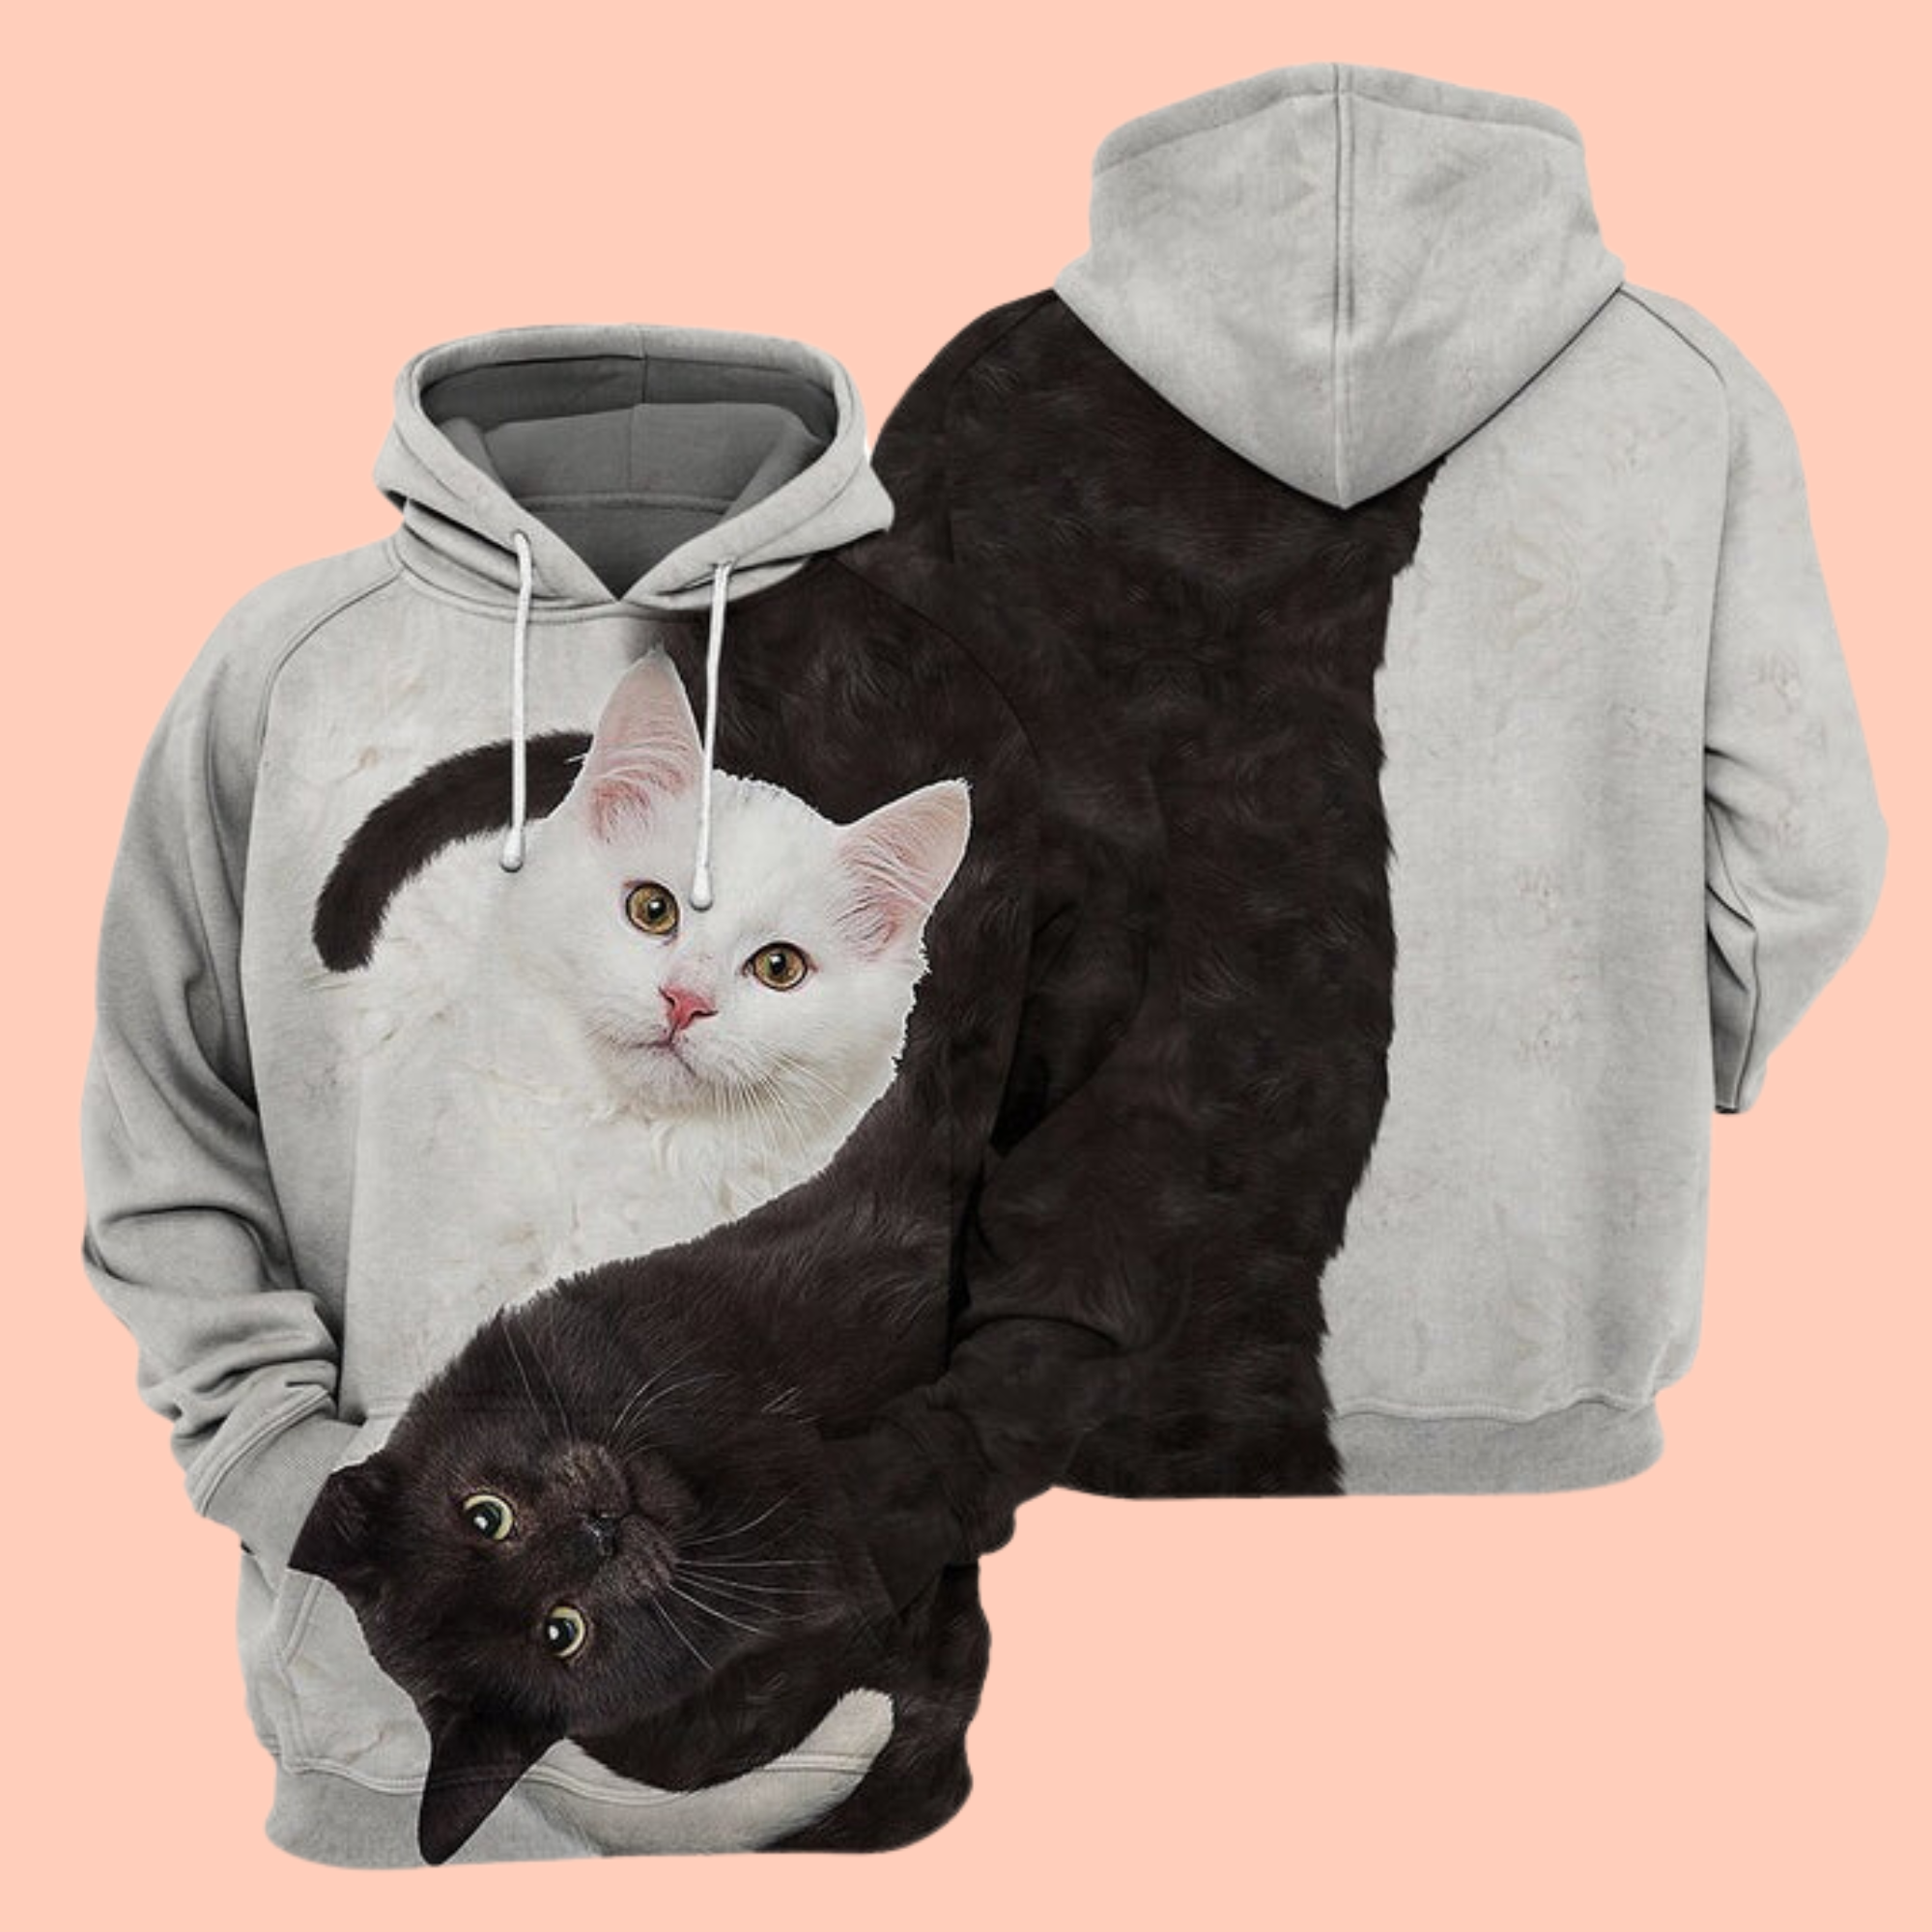 Yinyang Cat 3D Cat T-Shirt / Hoodie / Sweatshirt / Zipper Hoodie - Gift For Cat's Lovers